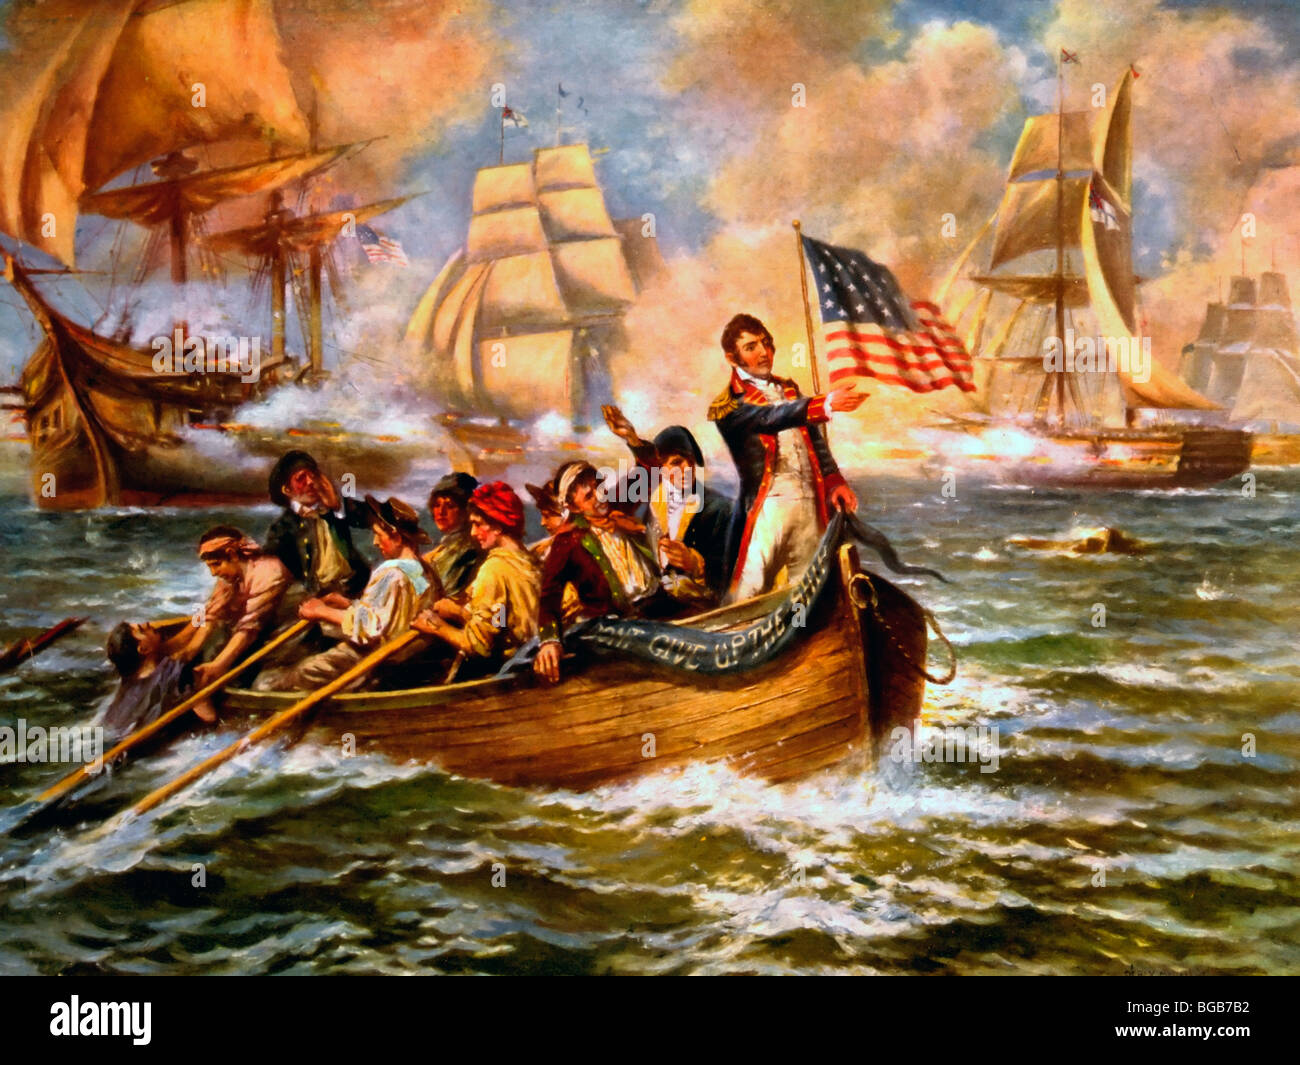 Oliver Hazard Perry après avoir abandonné son navire amiral, le Saint-Laurent au cours de la bataille du lac Érié, dans la guerre de 1812, Sept 10, 1813 Banque D'Images